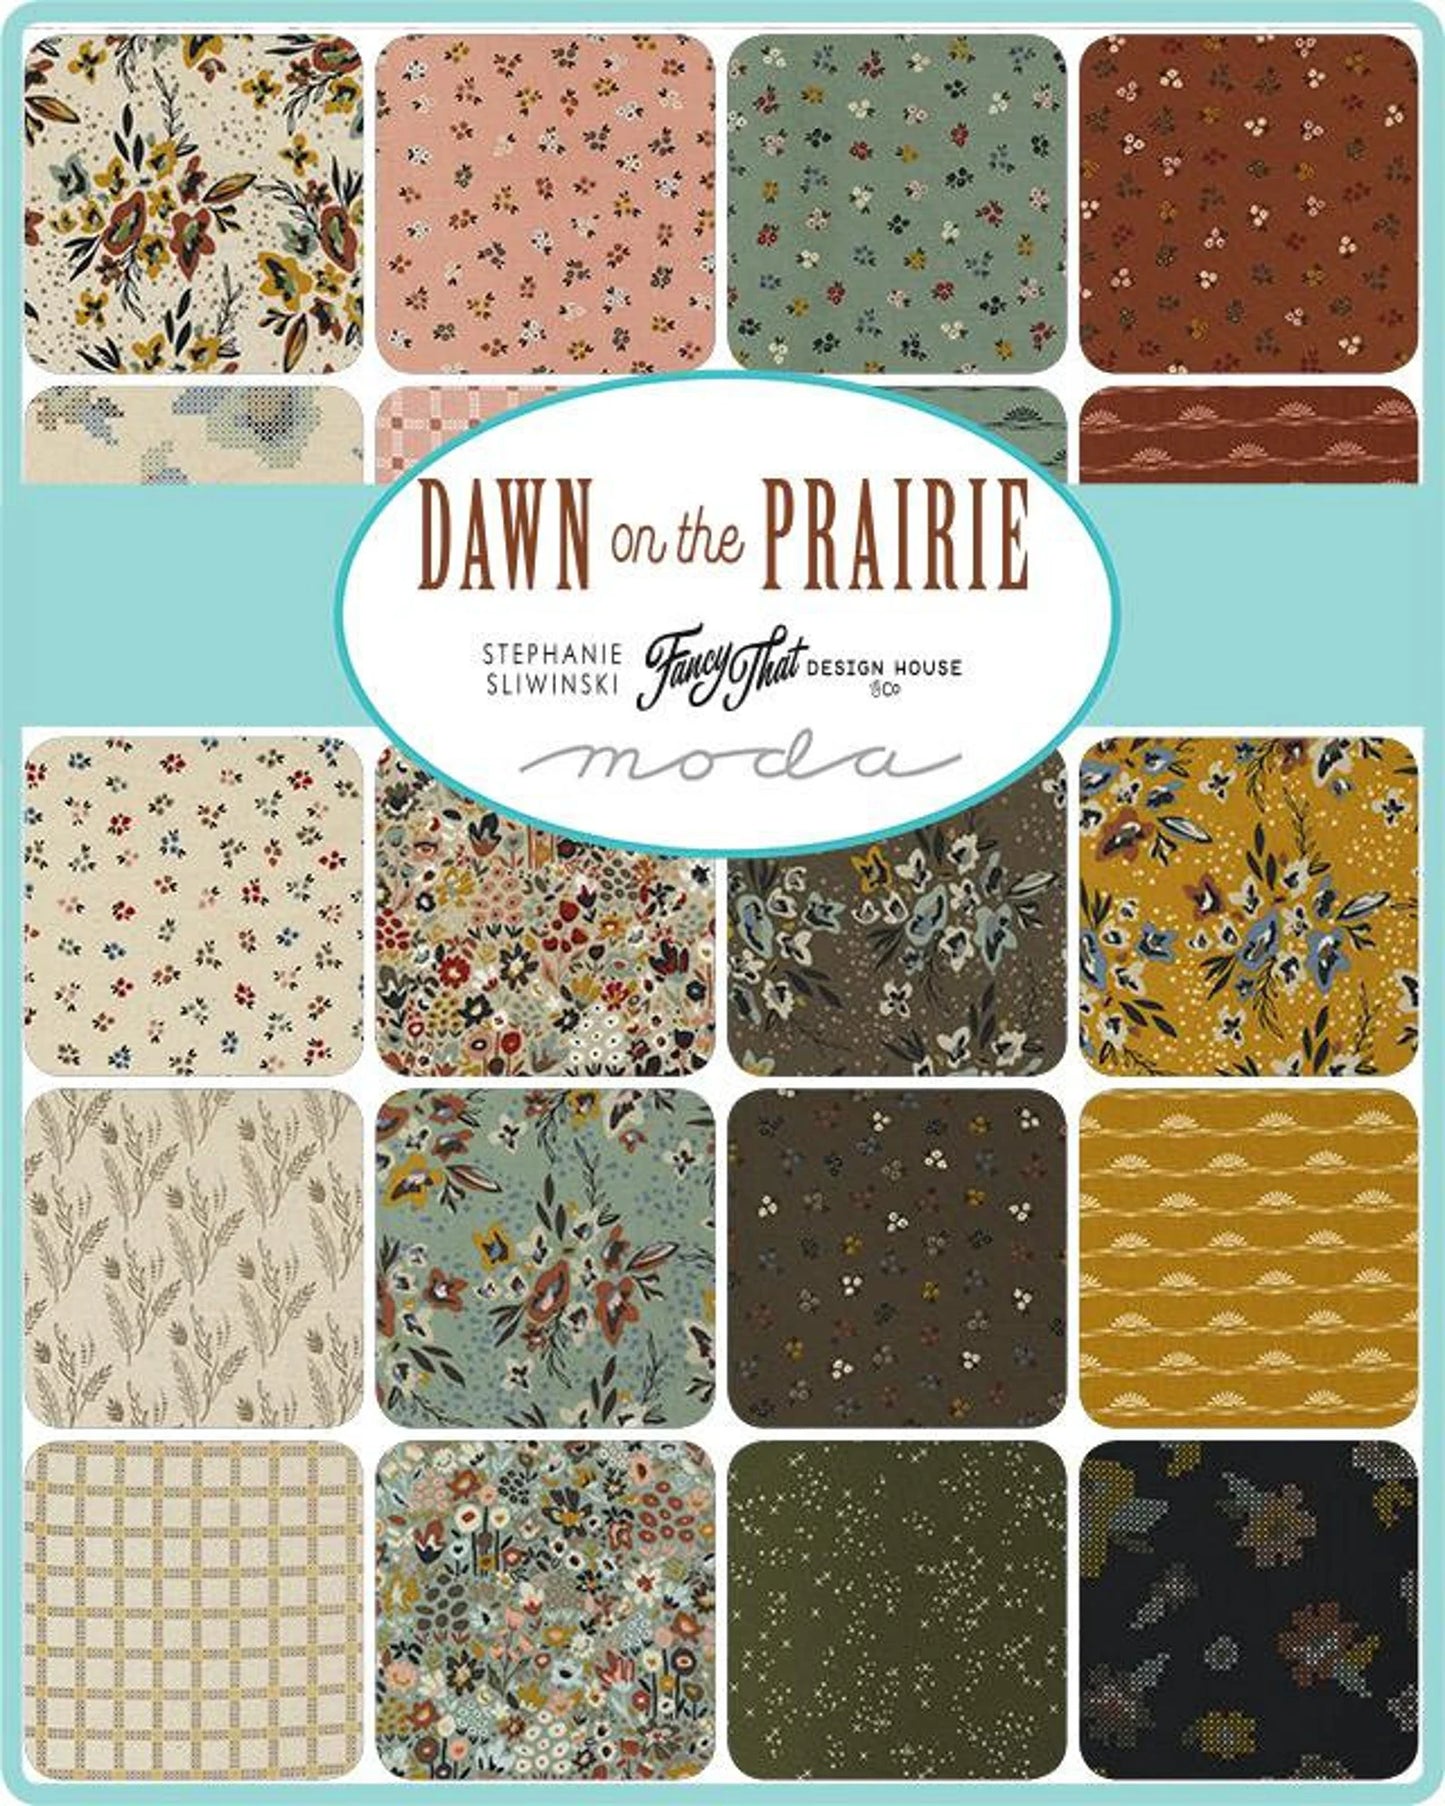 Dawn on the Prairie 5" charm pack fabric